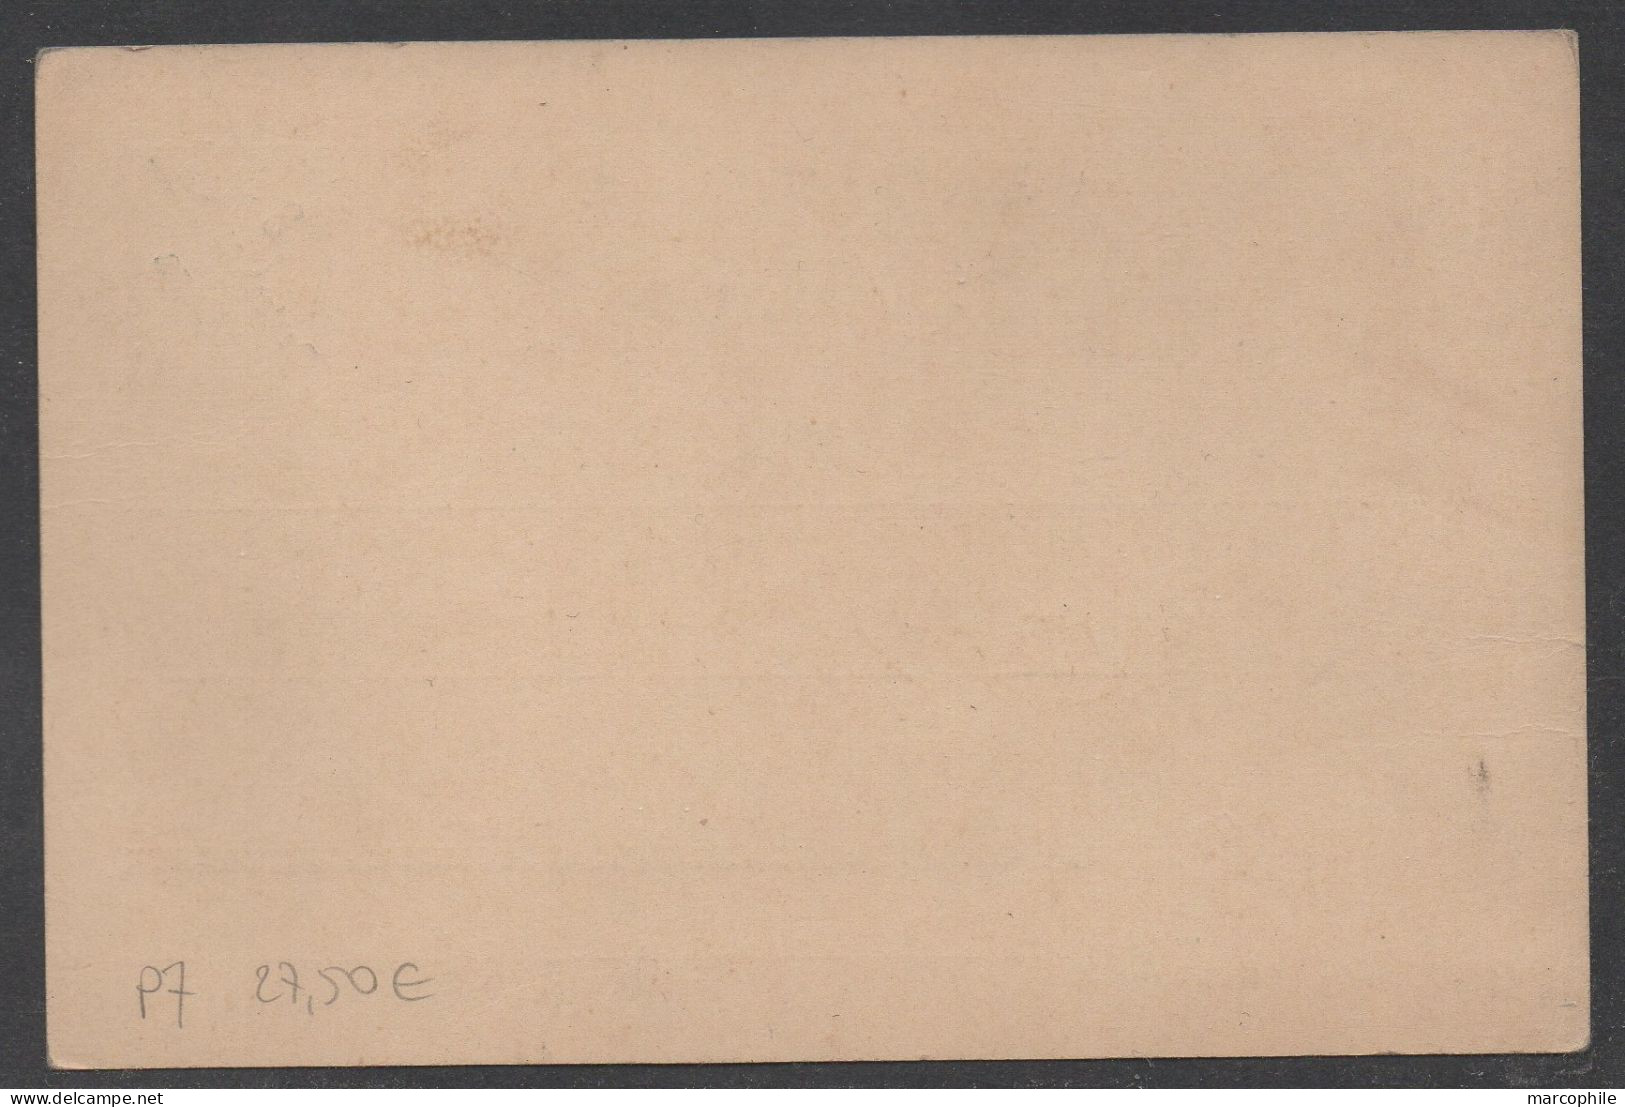 DEUTSCH OSTAFRIKA / 1896 # P5 - GSK OHNE DATUM  - ENTIER POSTAL SANS DATE - Afrique Orientale